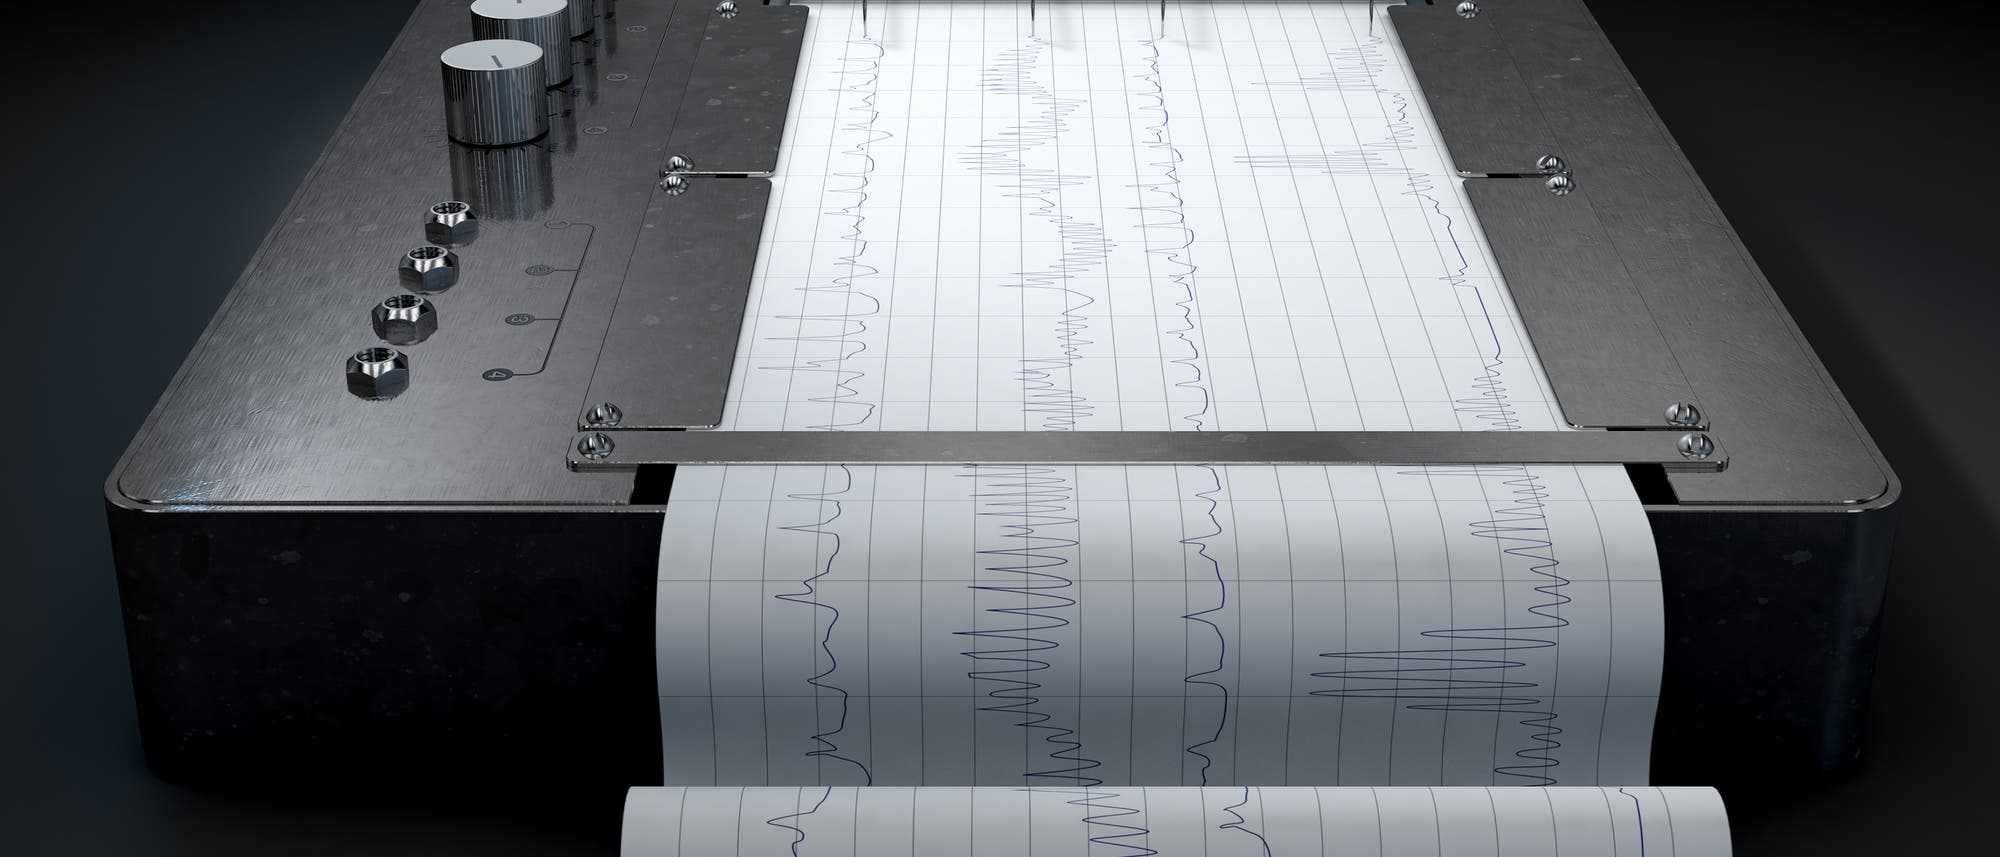 Ein alter Polygraf, der verschiedene Maße auf einem durchlaufenden Papier aufzeichnet